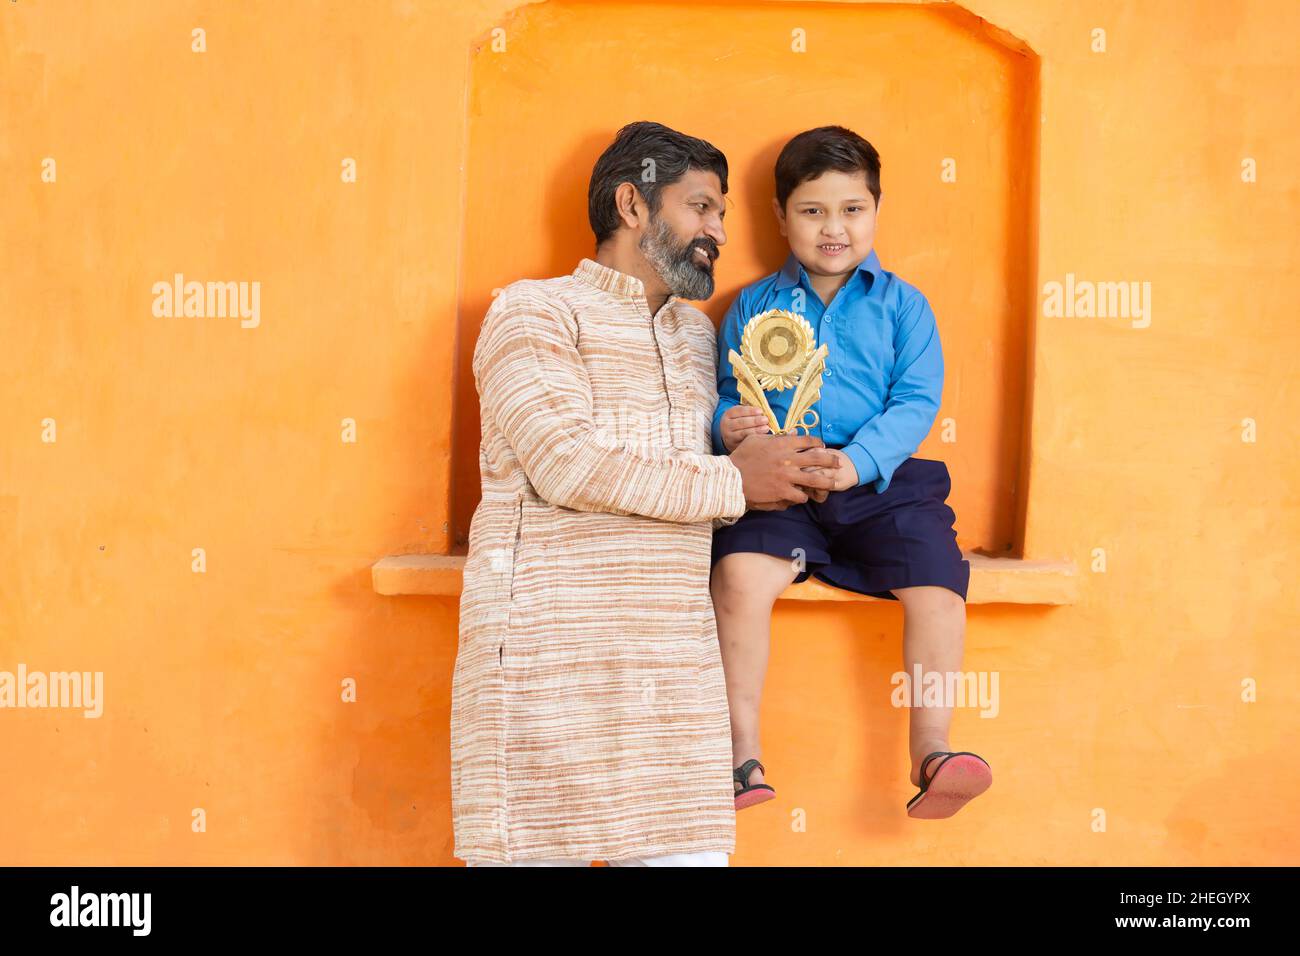 Portrait Junge glückliche indische Vater mit seinem niedlichen Sohn mit Siegerpreis, lächelnder Mann in traditionellem Outfit, der mit dem Jungen in der Schulkleidung Showin steht Stockfoto